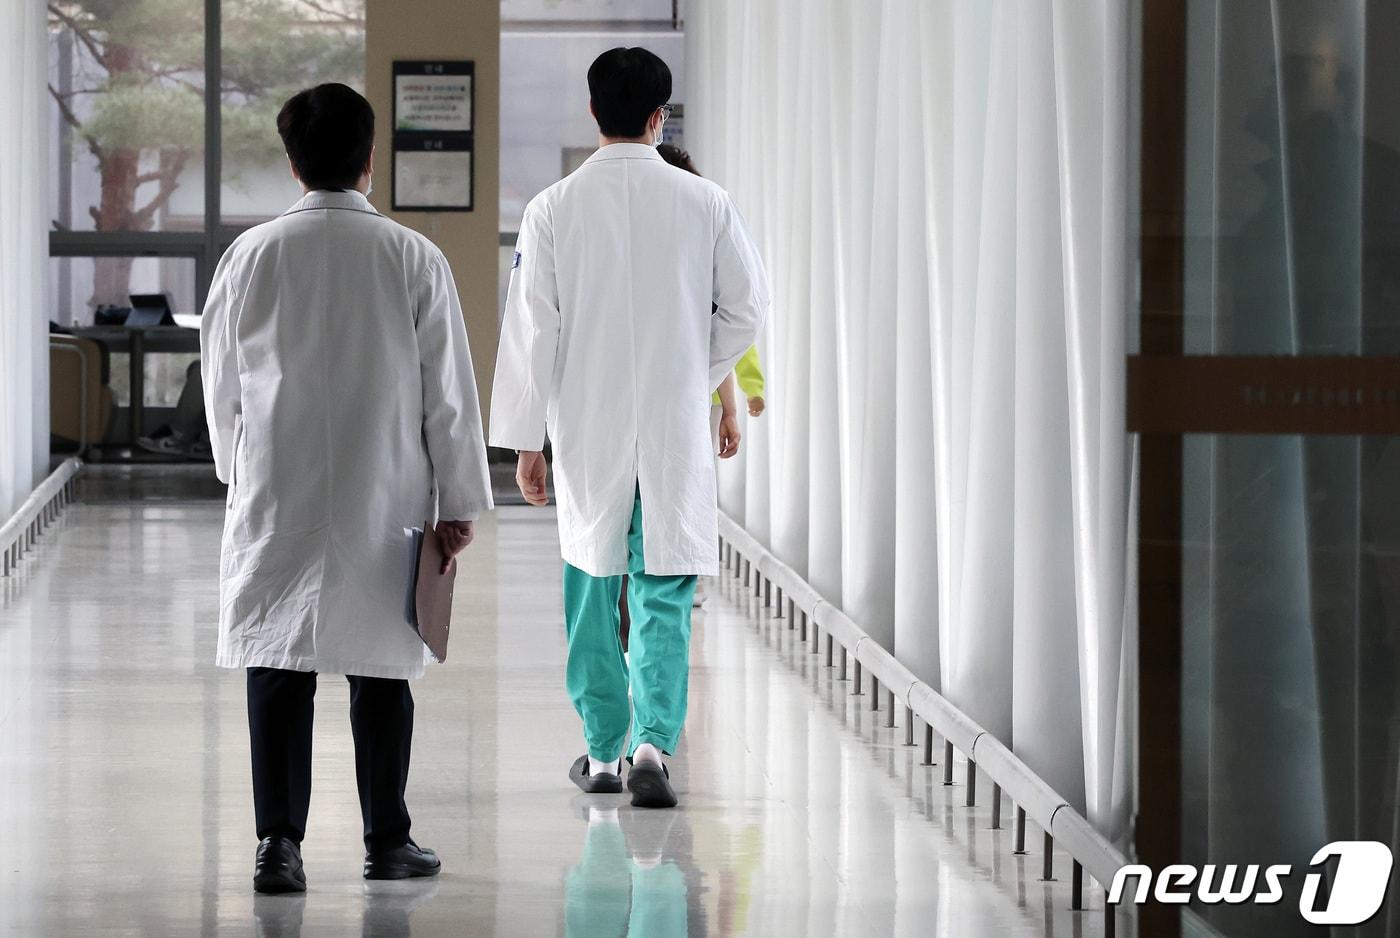 1서울의 한 대형 종합병원에서 의료진이 발걸음을 옮기고 있다. ⓒ News1 